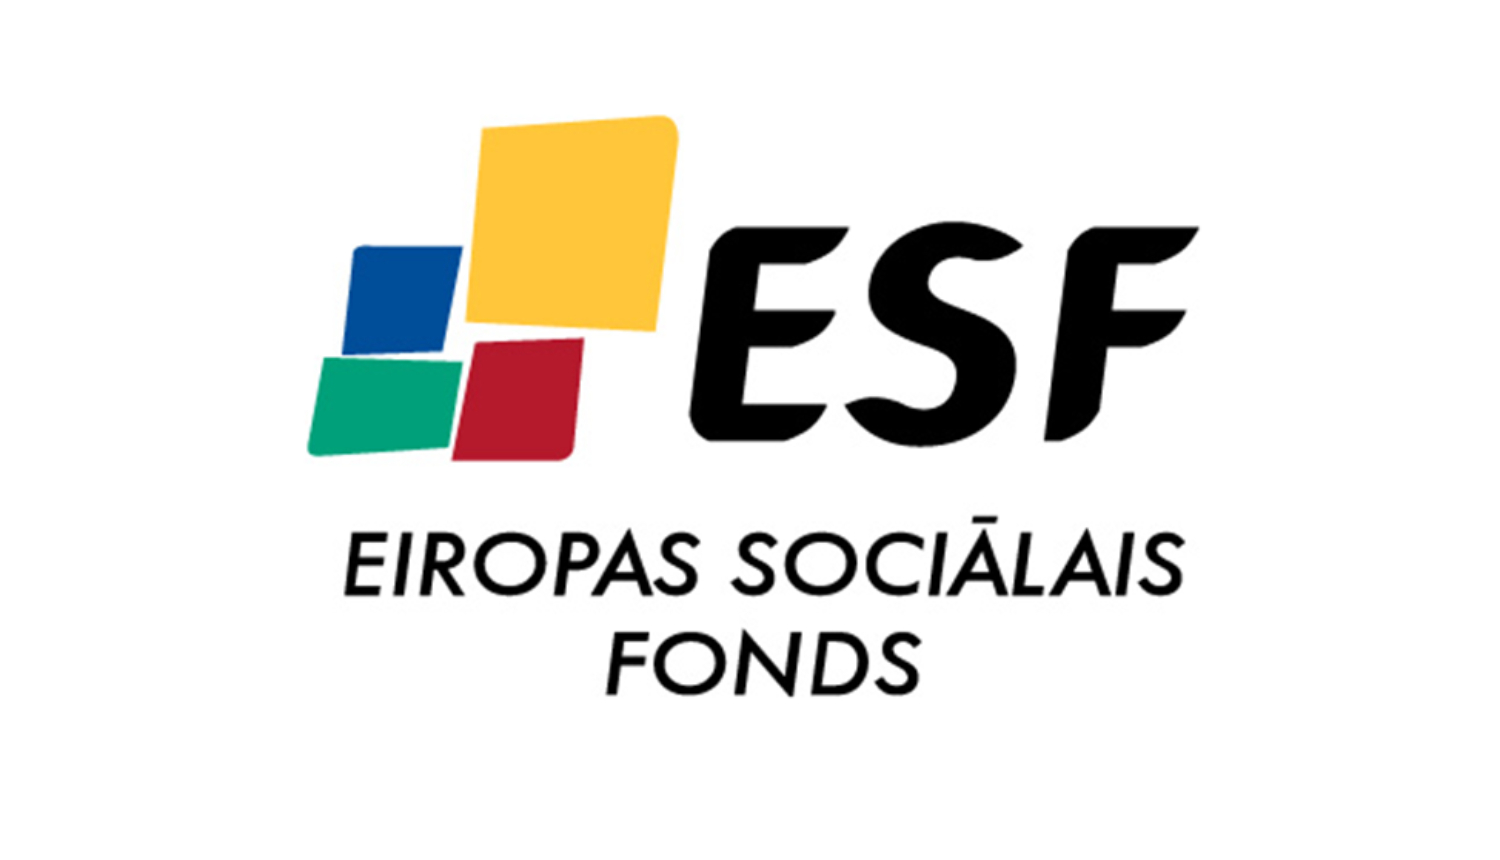 Eiropas sociālais fonds logo